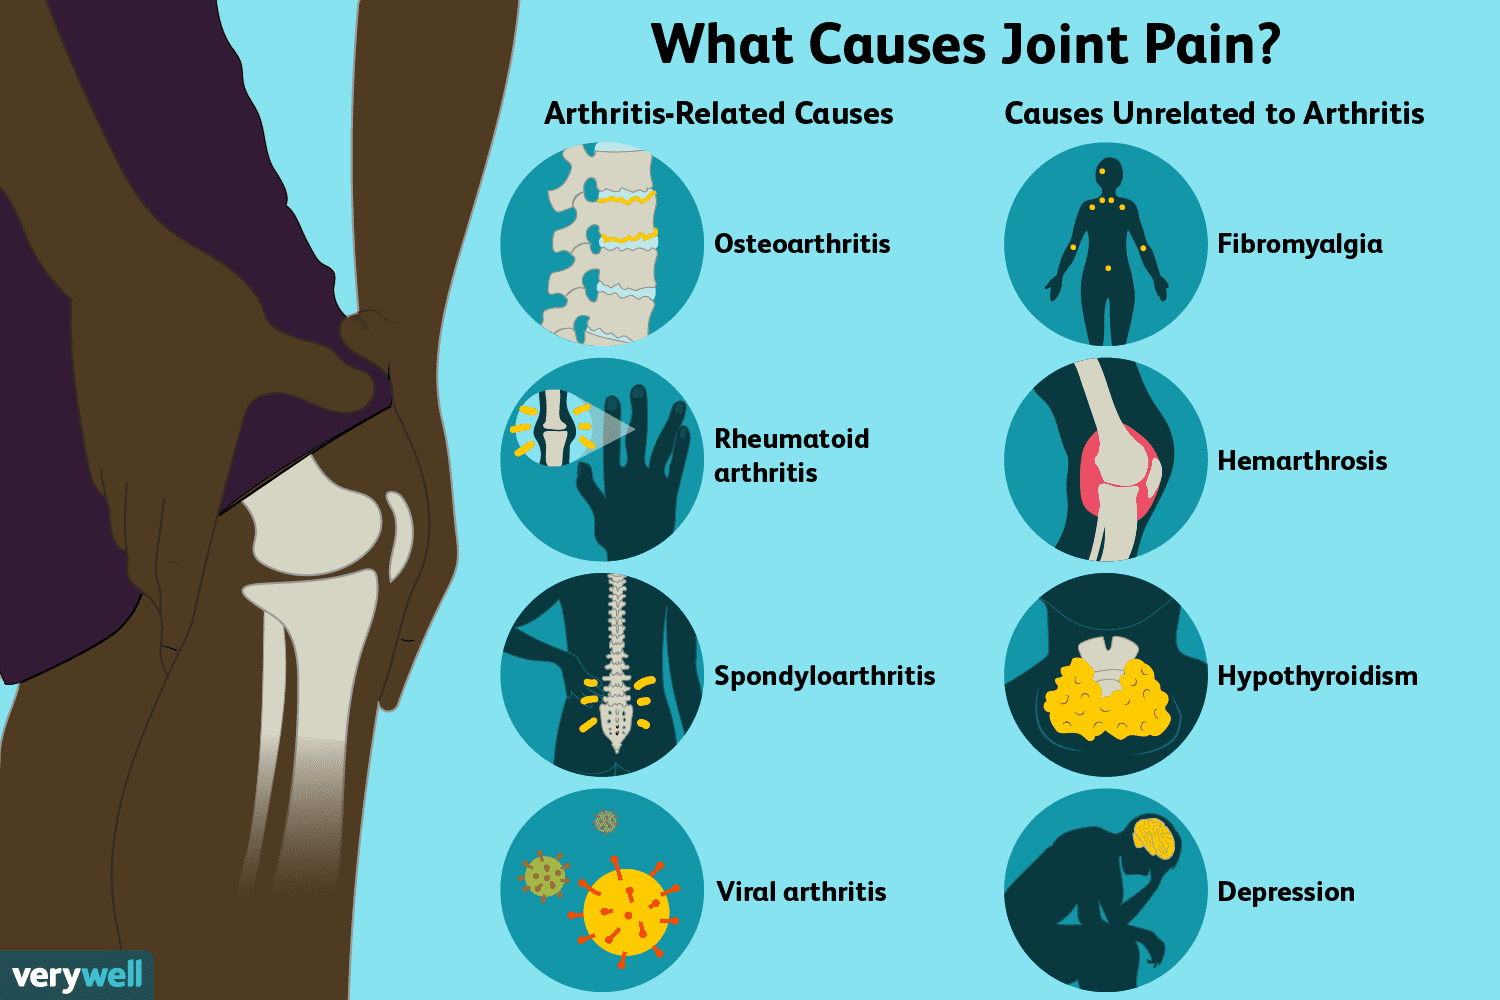 swollen painful joints sudden onset lėtinis nuovargis silpnumas raumenų skausmas sąnarių